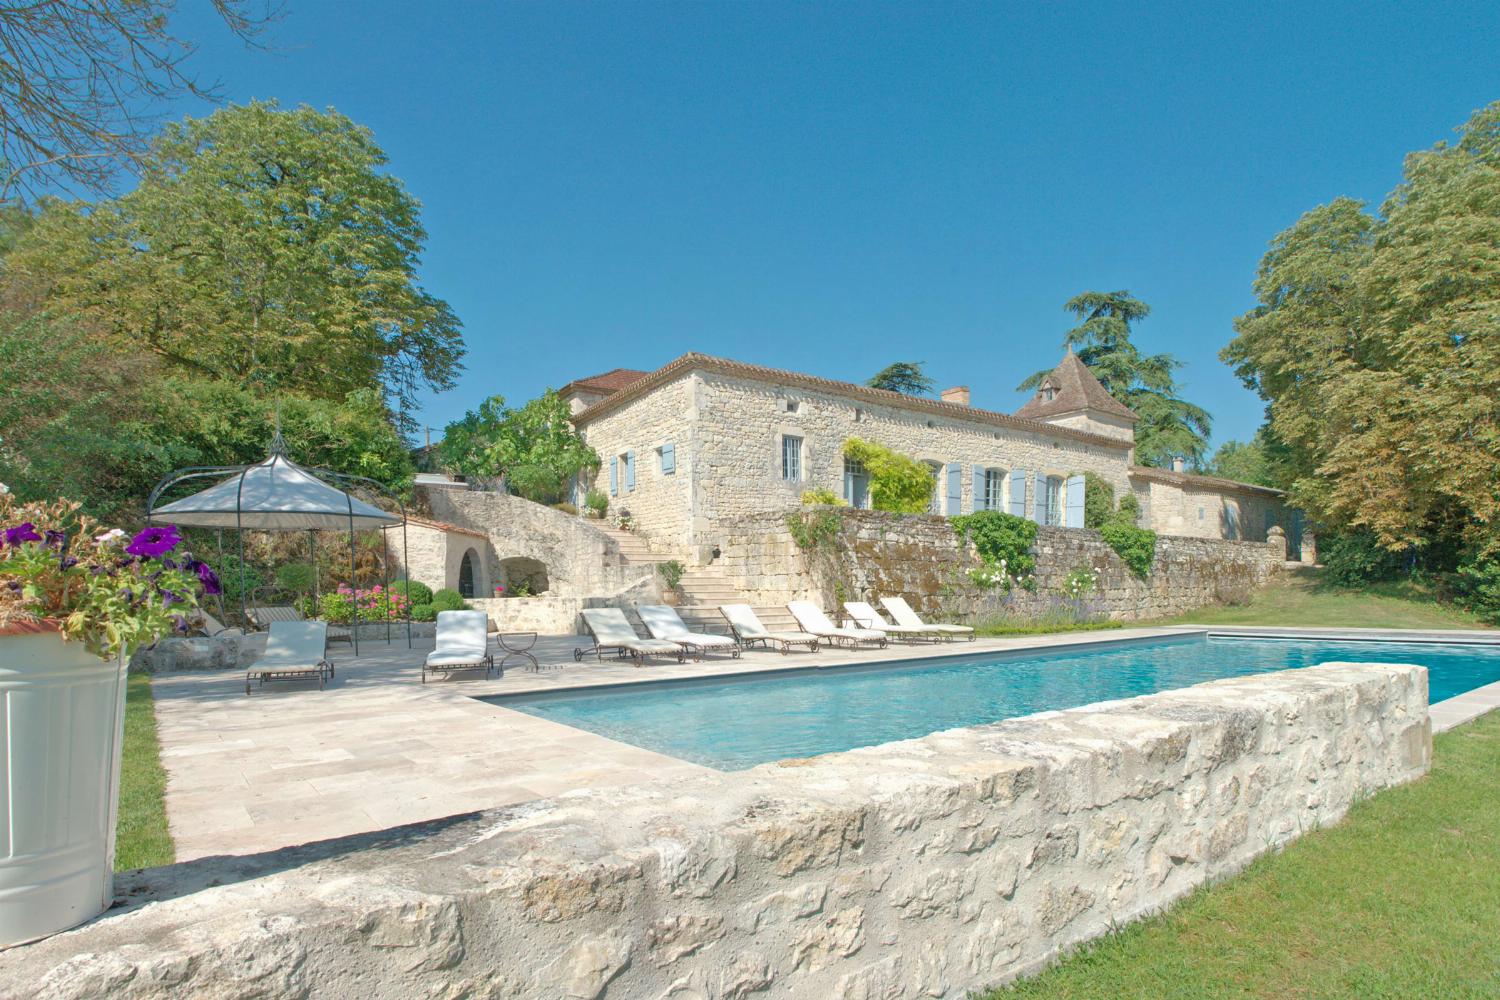 Location de vacances dans le Tarn-en-Garonne avec piscine privée chauffée